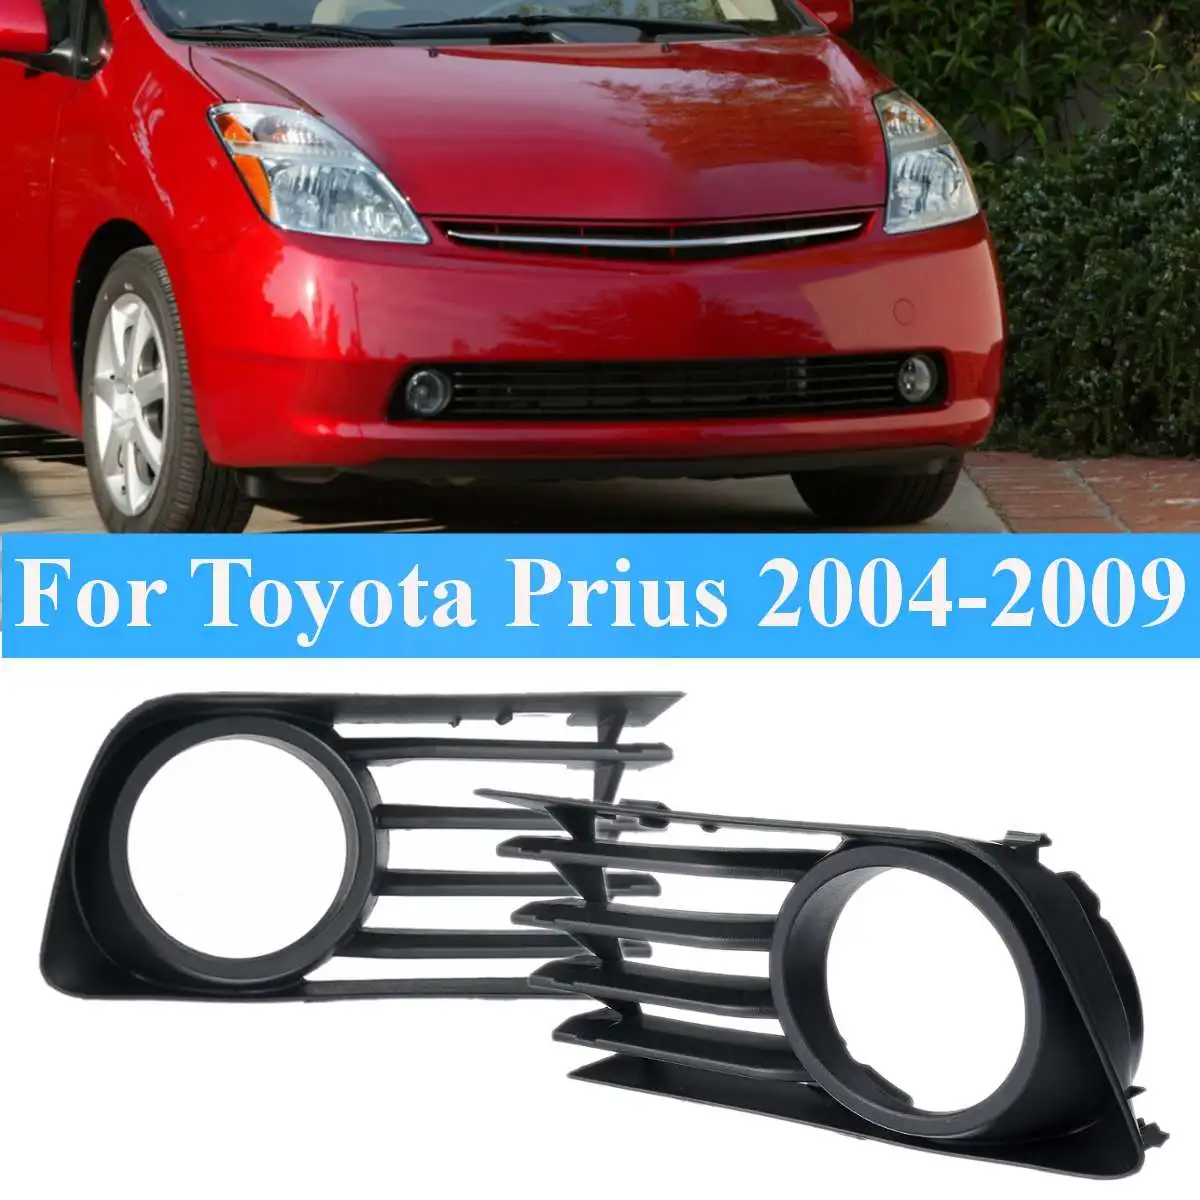 12 В противотуманная фара крышка для Toyota Prius 2006-2009 комплект для освещения автомобиля передние фары с проводкой комплект галогенные